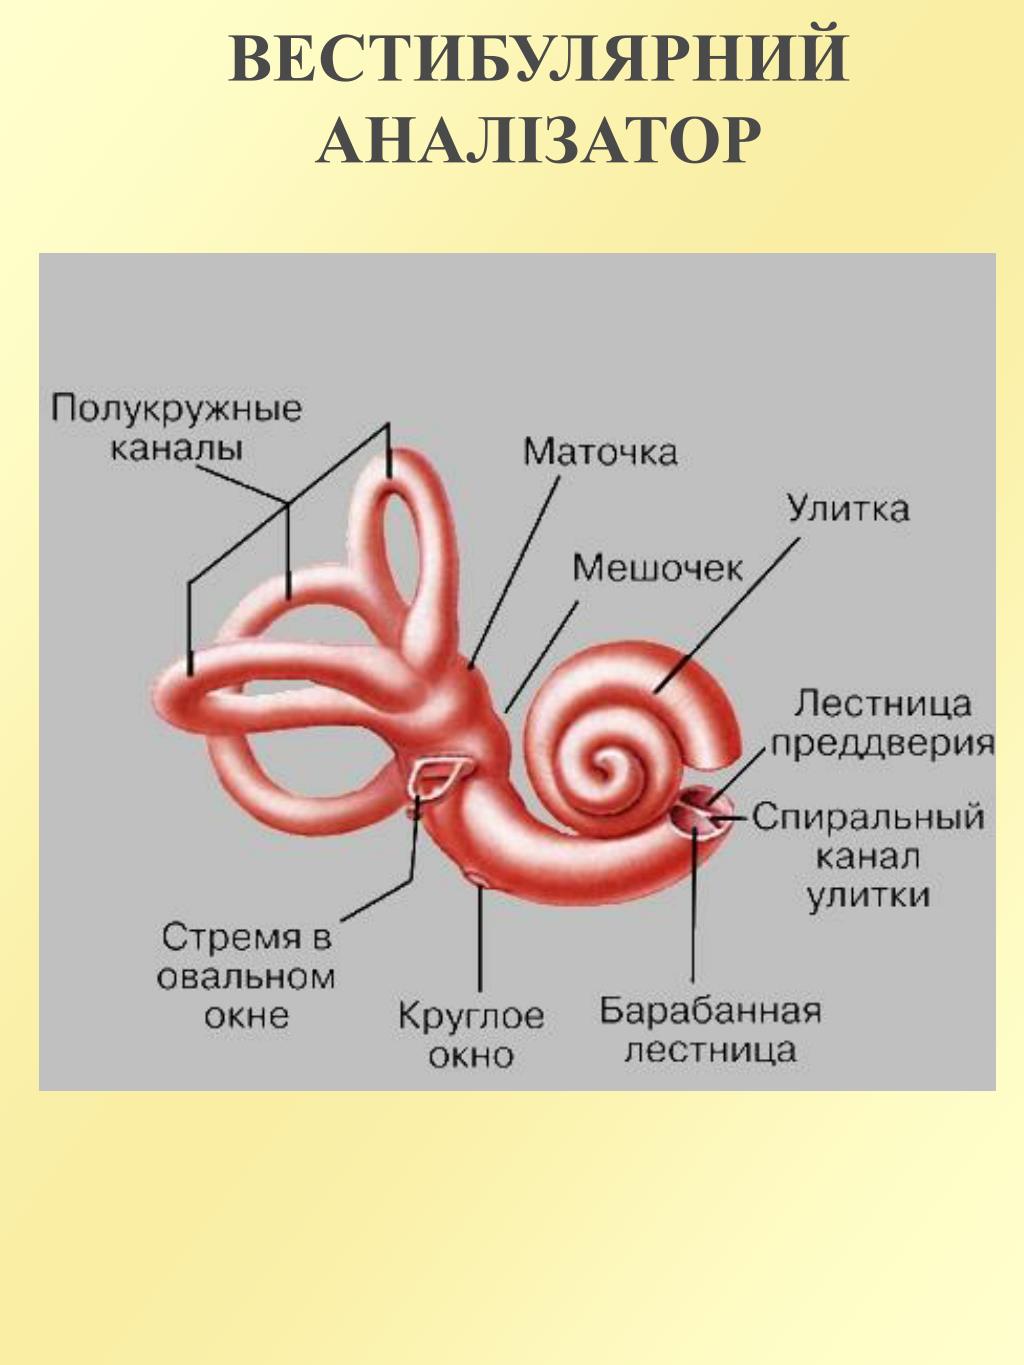 Улитка относится к органу. Внутреннее ухо маточка и мешочек. Анатомия улитки внутреннего уха. Строение полукружных каналов внутреннего уха. Полукружные канальцы внутреннего уха.